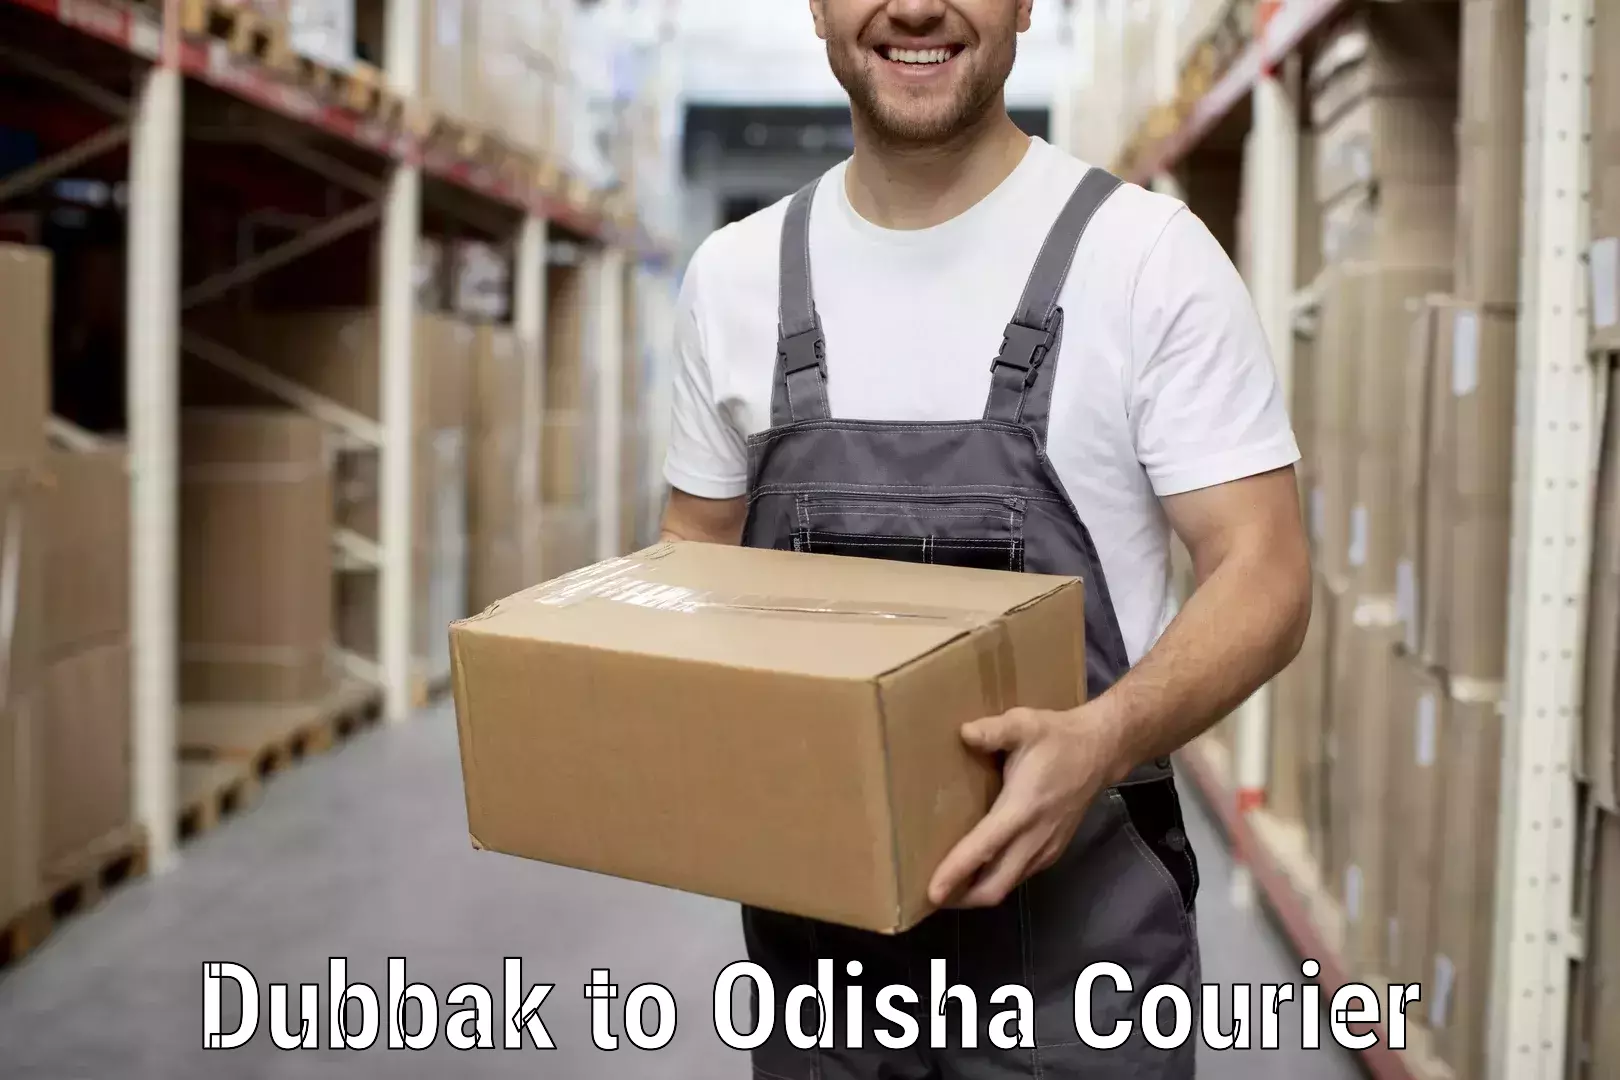 Furniture delivery service Dubbak to Raruan